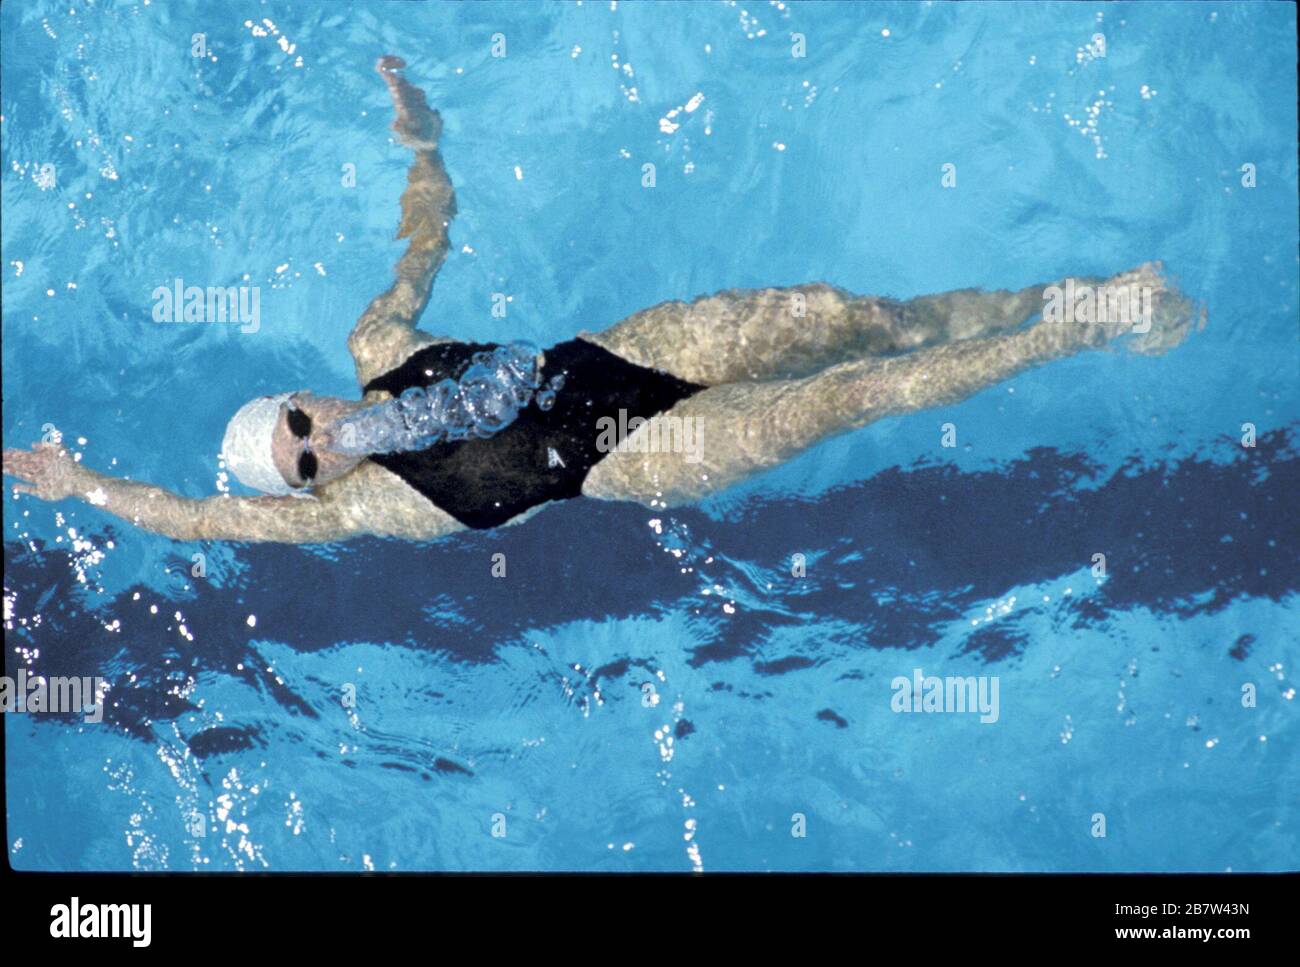 Palo Alto, Californie Etats-Unis: Lea Loveless, nageur de course de fond de Stanford, en compétition dans le championnat universitaire féminin de NCAA. ©Bob Daemmrich Banque D'Images